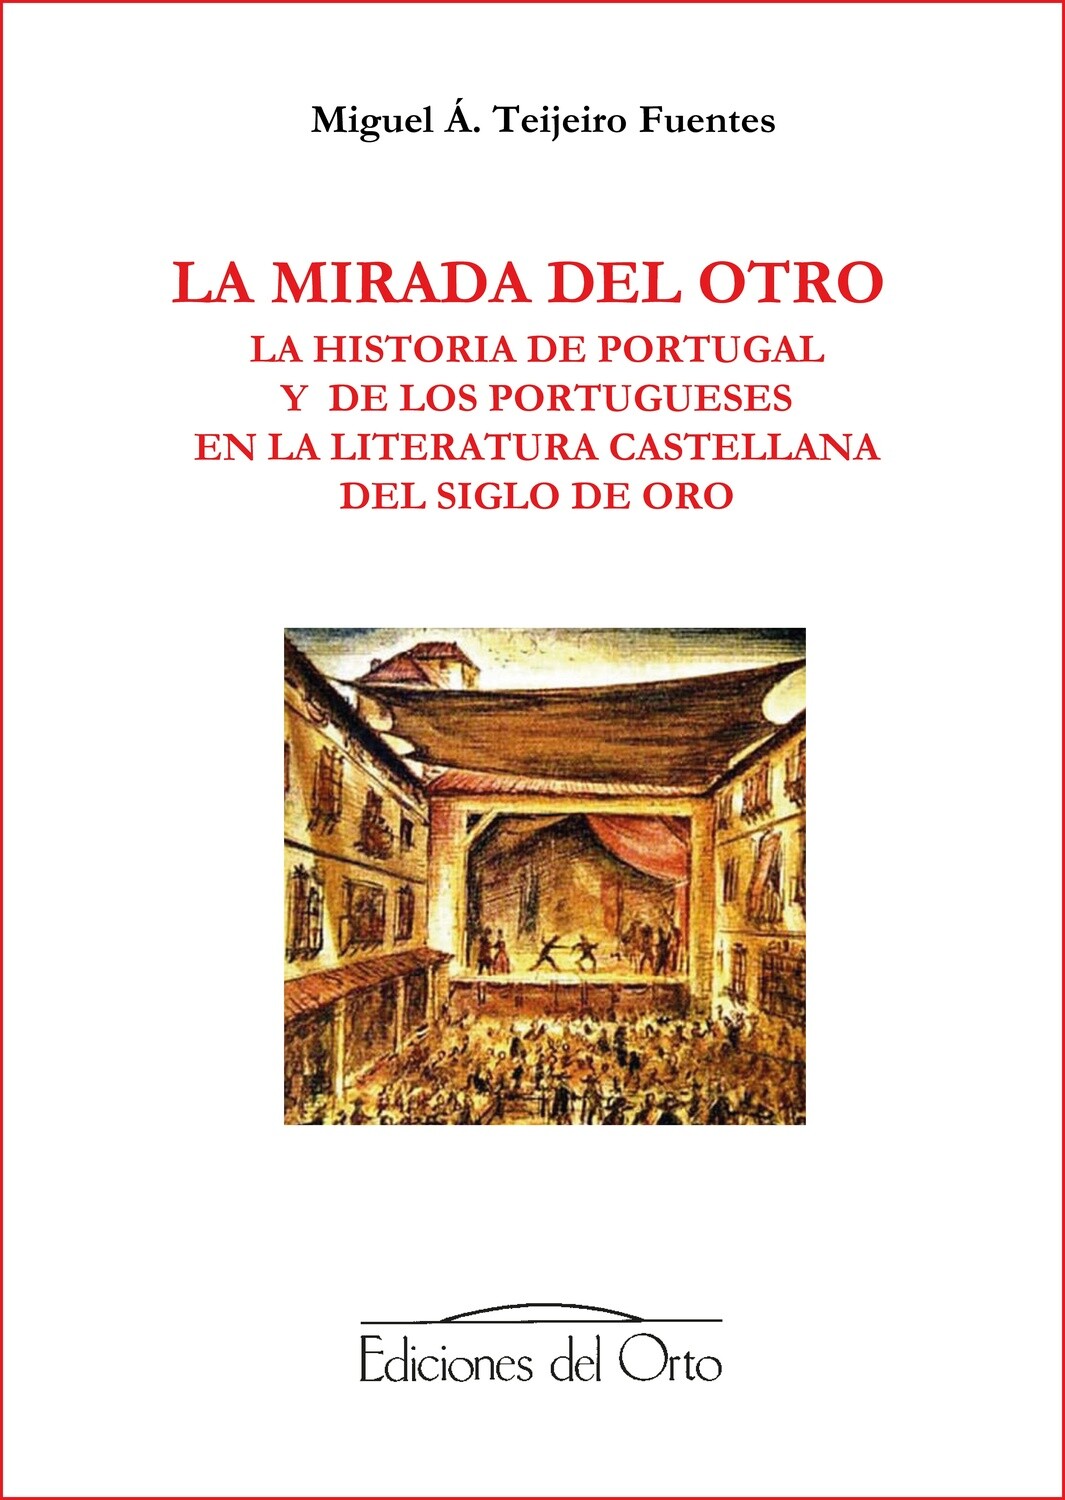 Imagen de portada del libro La mirada del otro. La historia de Portugal y de los portugueses en la literatura castellana del Siglo de Oro